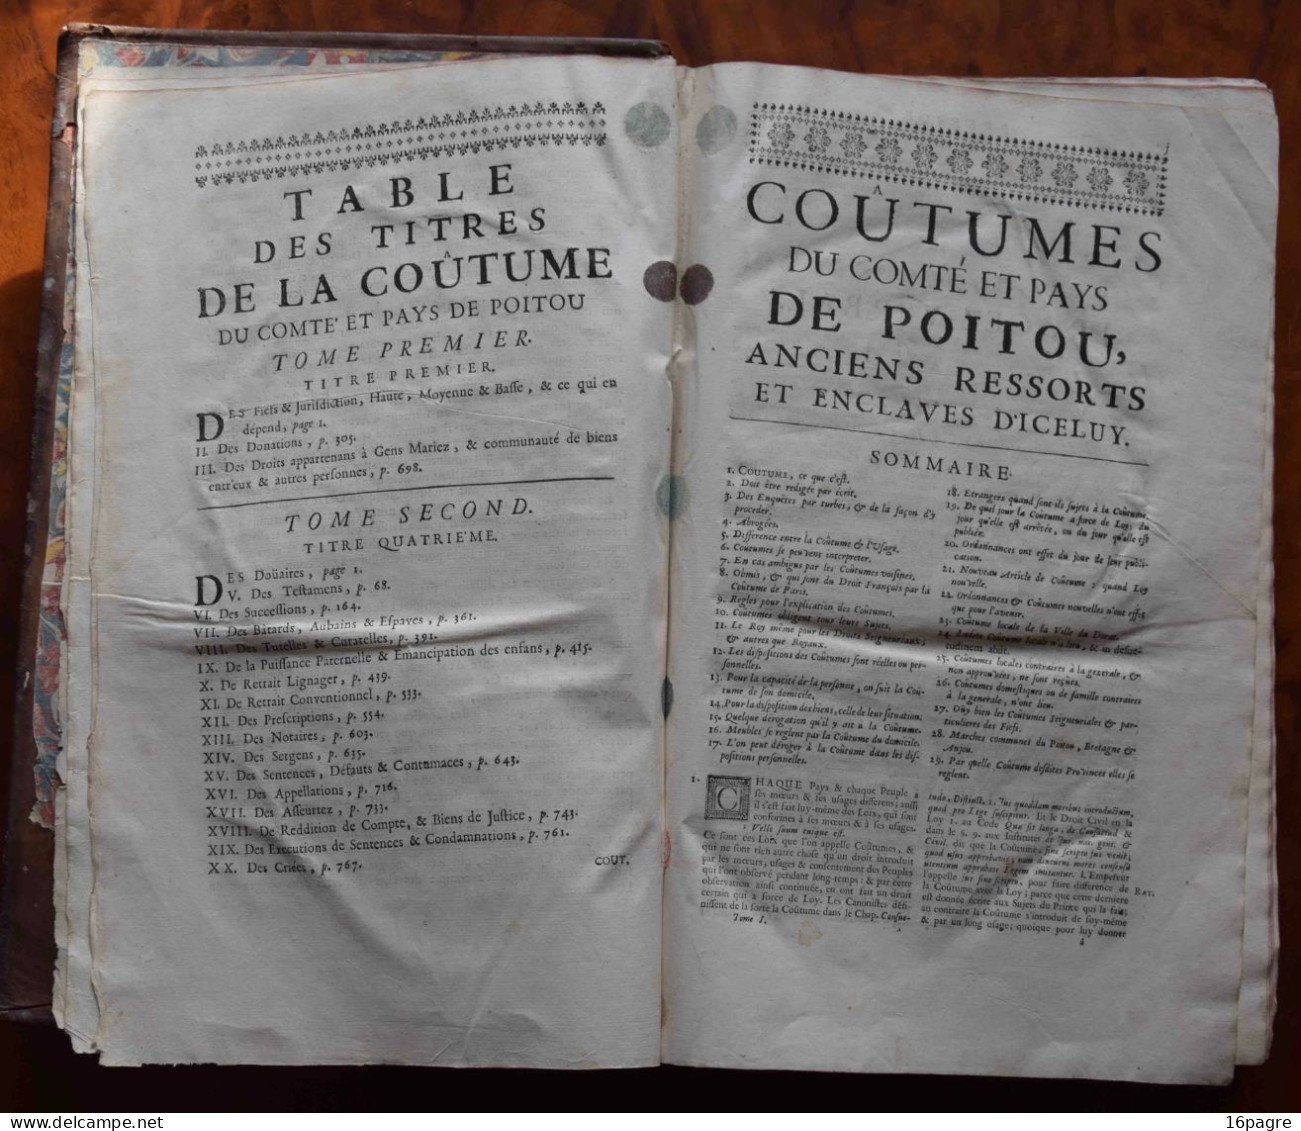 RARE COUTUMIER DU COMTÉ ET PAYS DE POITOU. BOUCHEUL, LE DORAT. POITIERS, 1727. TOME 1, 961 PAGES